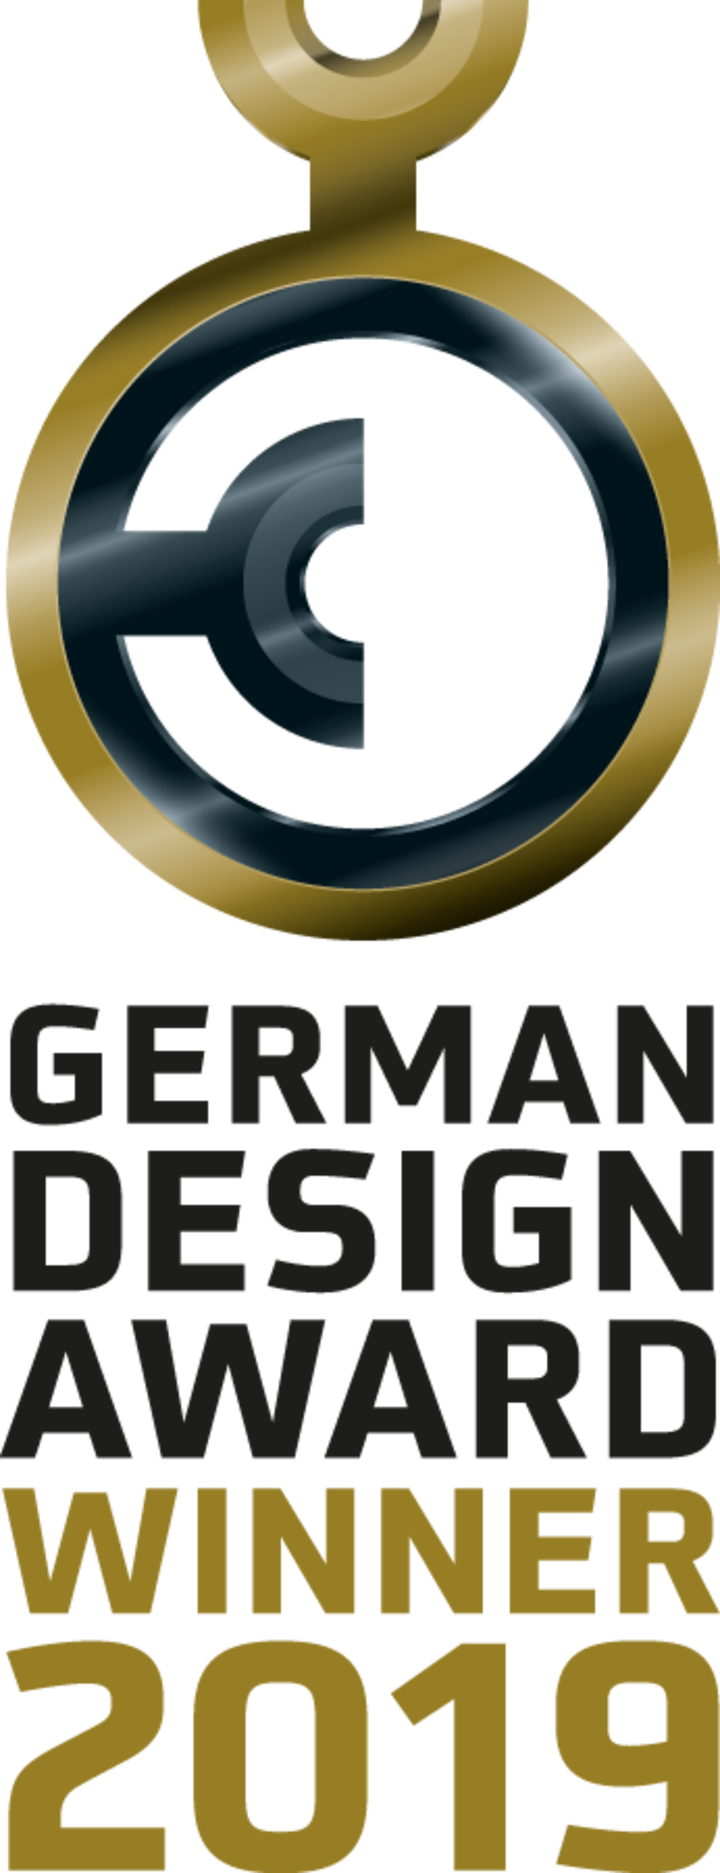 Der German Design Award gehört zu den renommiertesten Auszeichnungen für hohe Designkompetenz. (Bild: Rat für Formgebung, German Design Coun-cil)